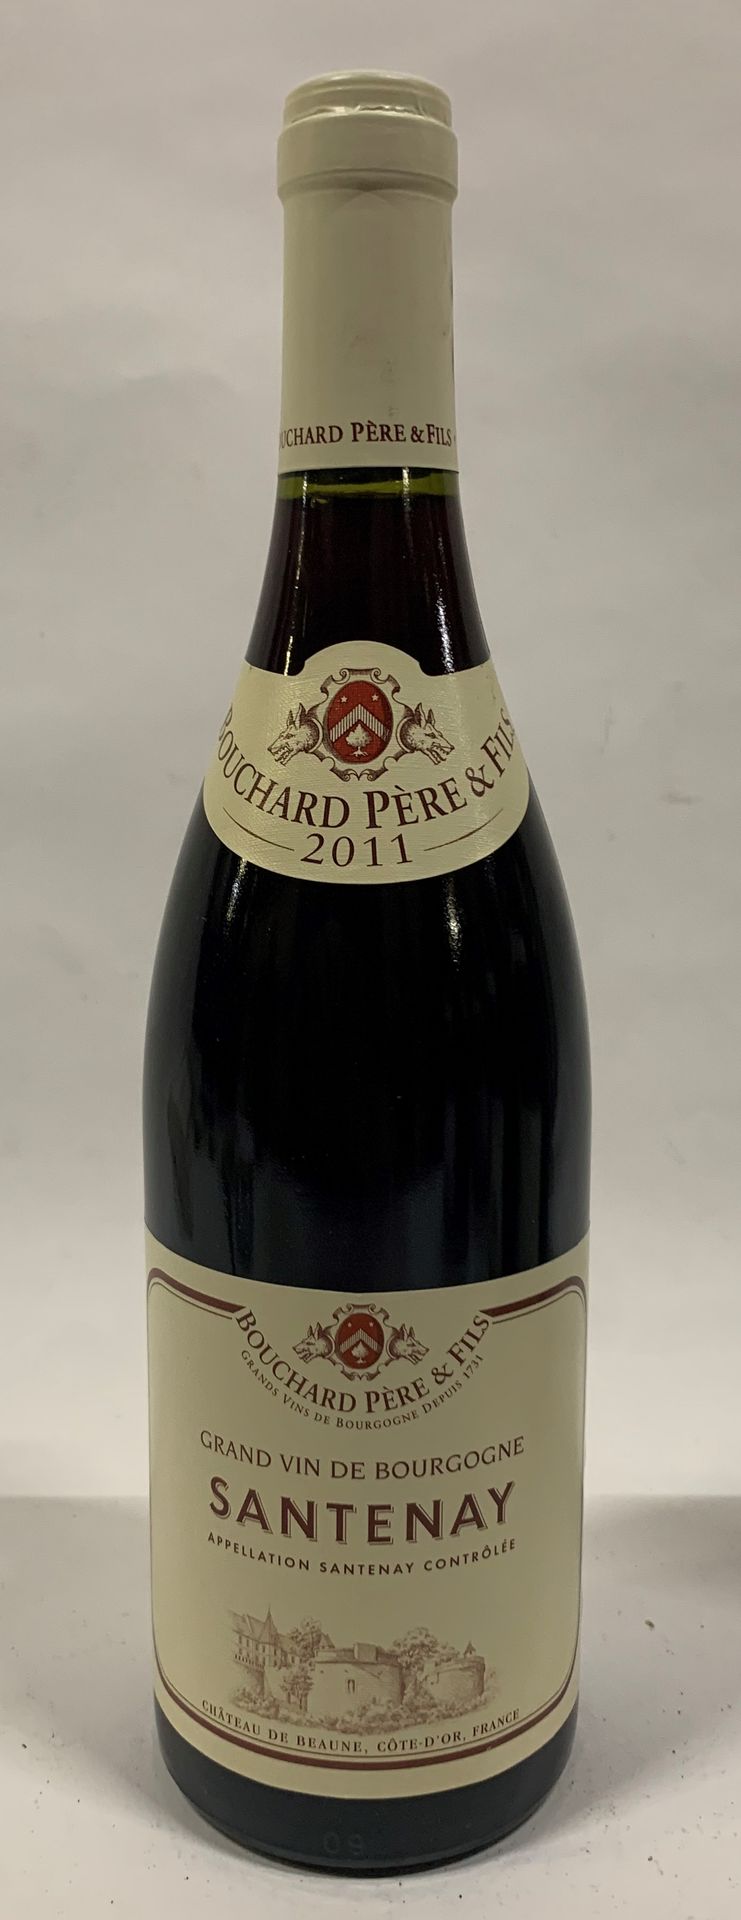 Null ● SANTENAY | Bouchard Père & Fils, 2011

6 bouteilles

Réf. 42